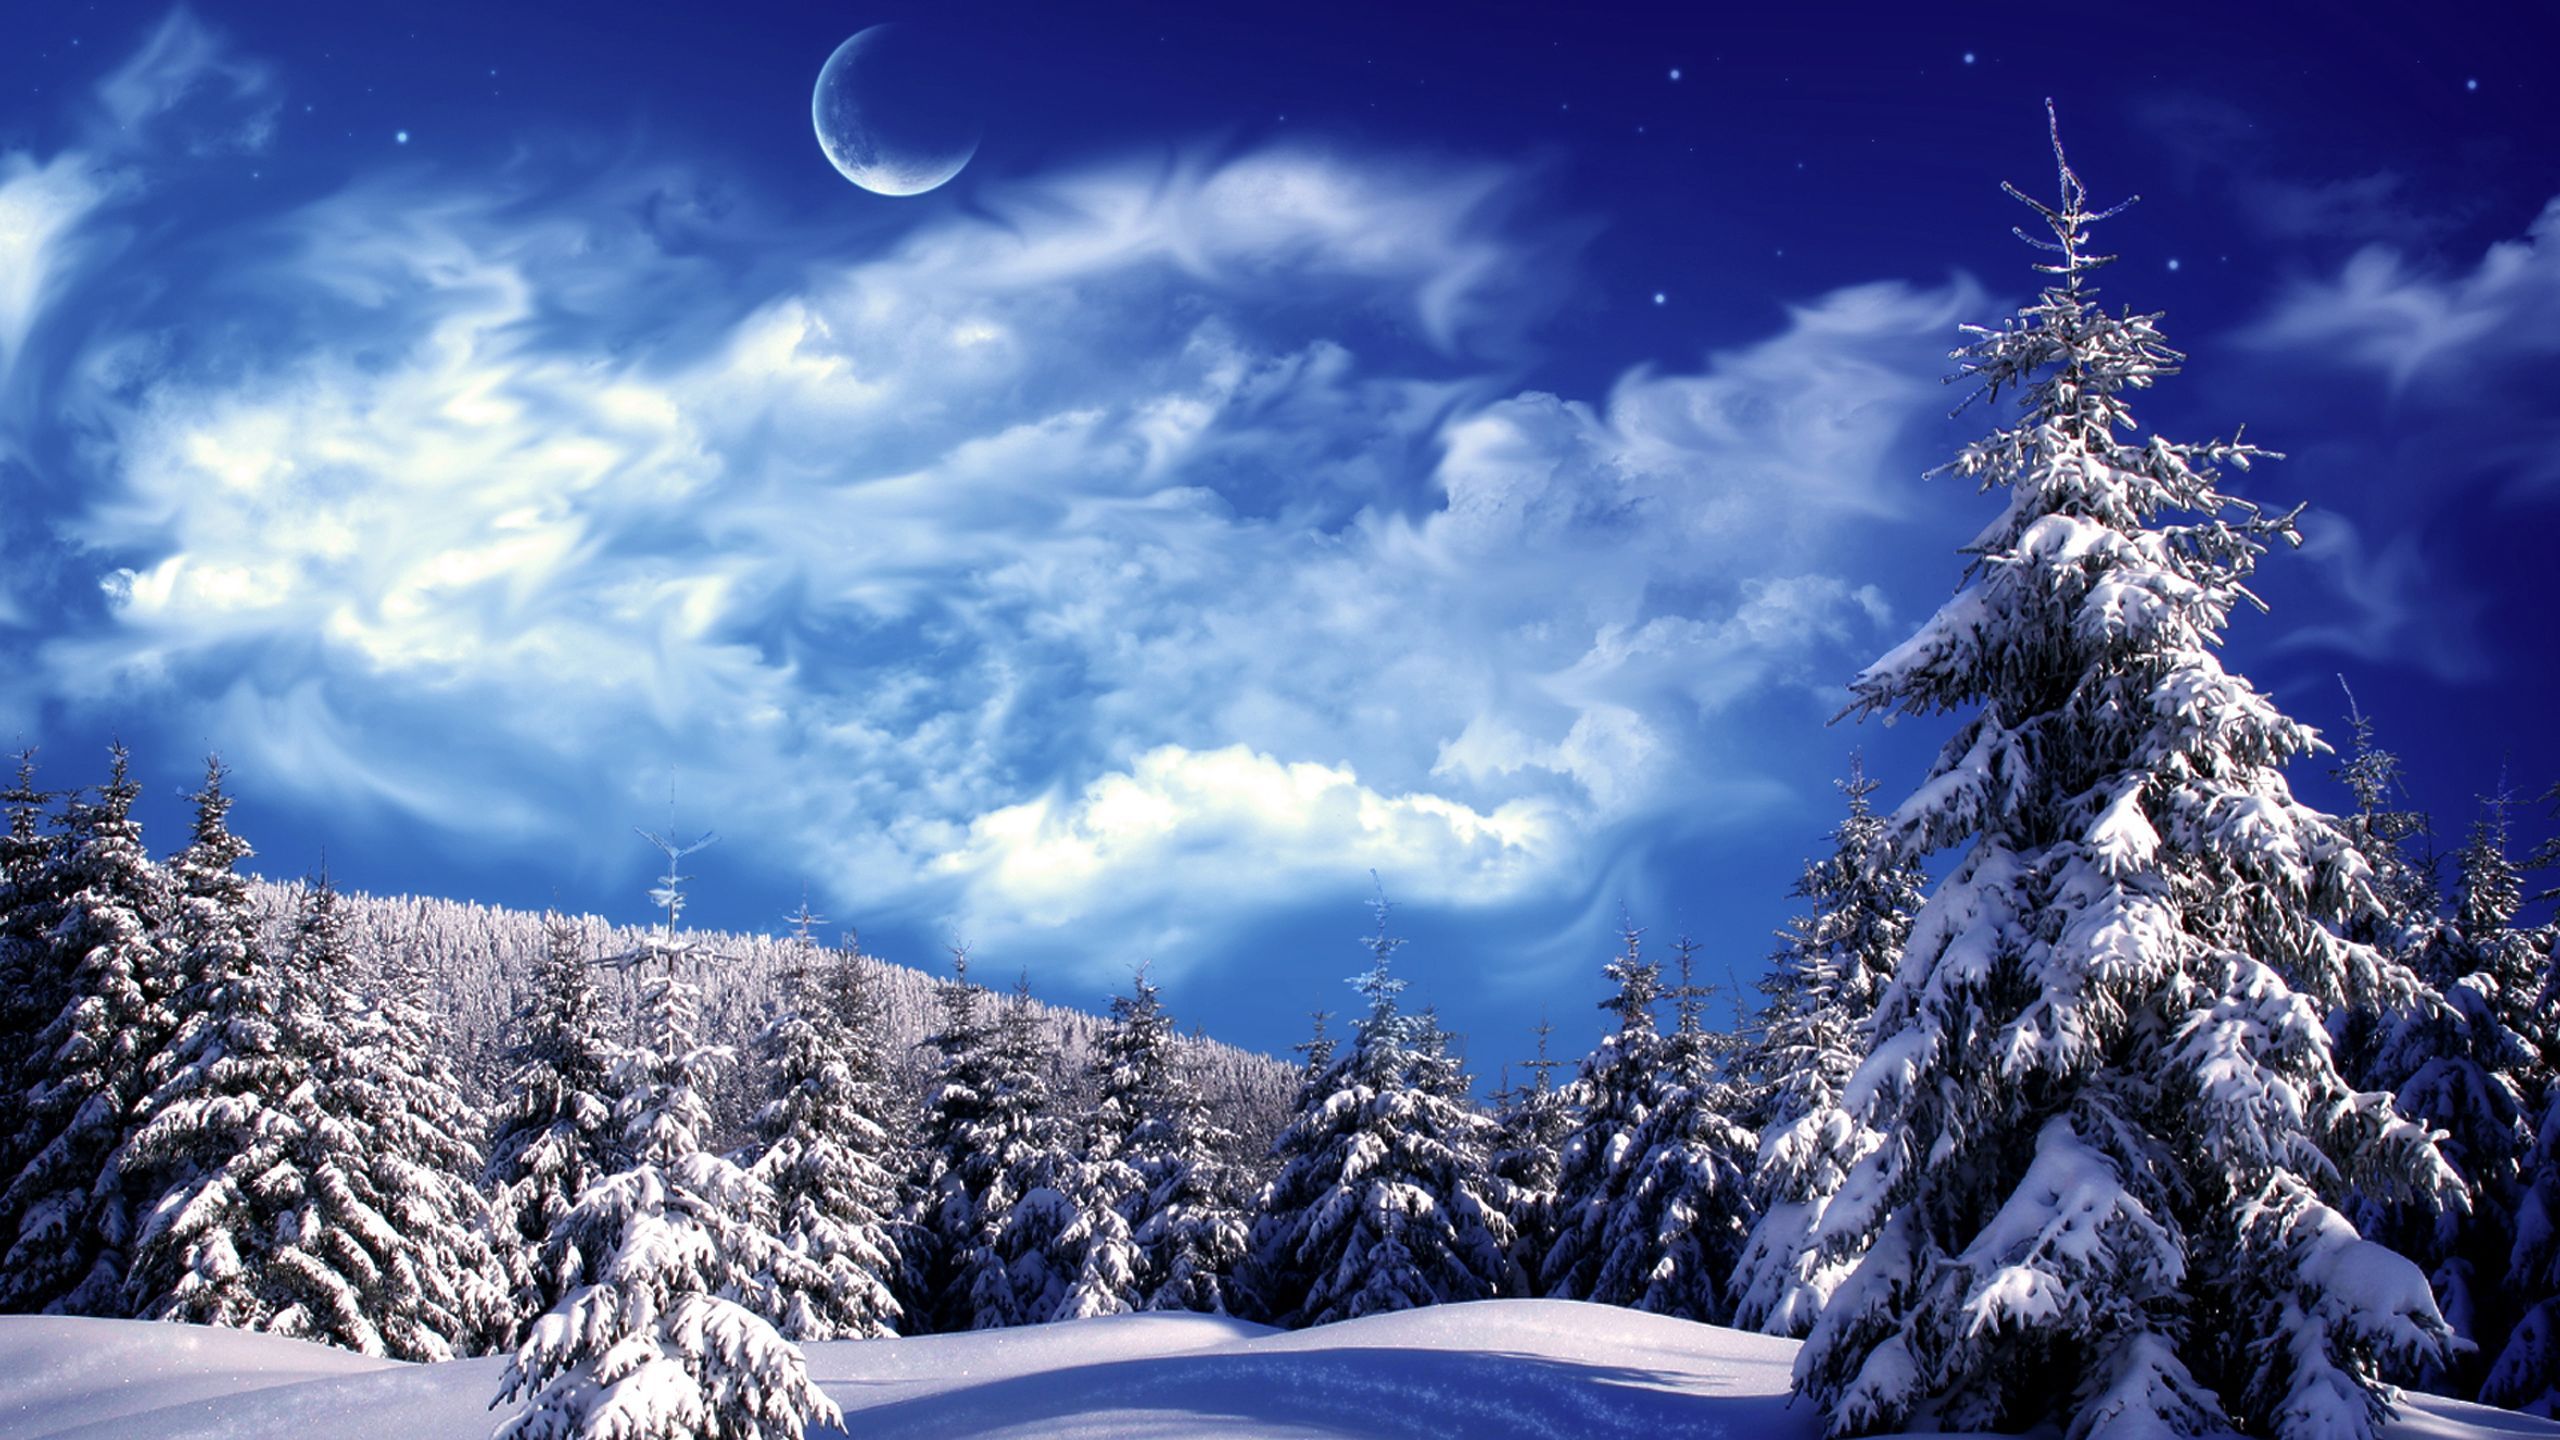 tag seasonal winter scences. Winter Scenes for Desktop. Winter scenery, Winter landscape